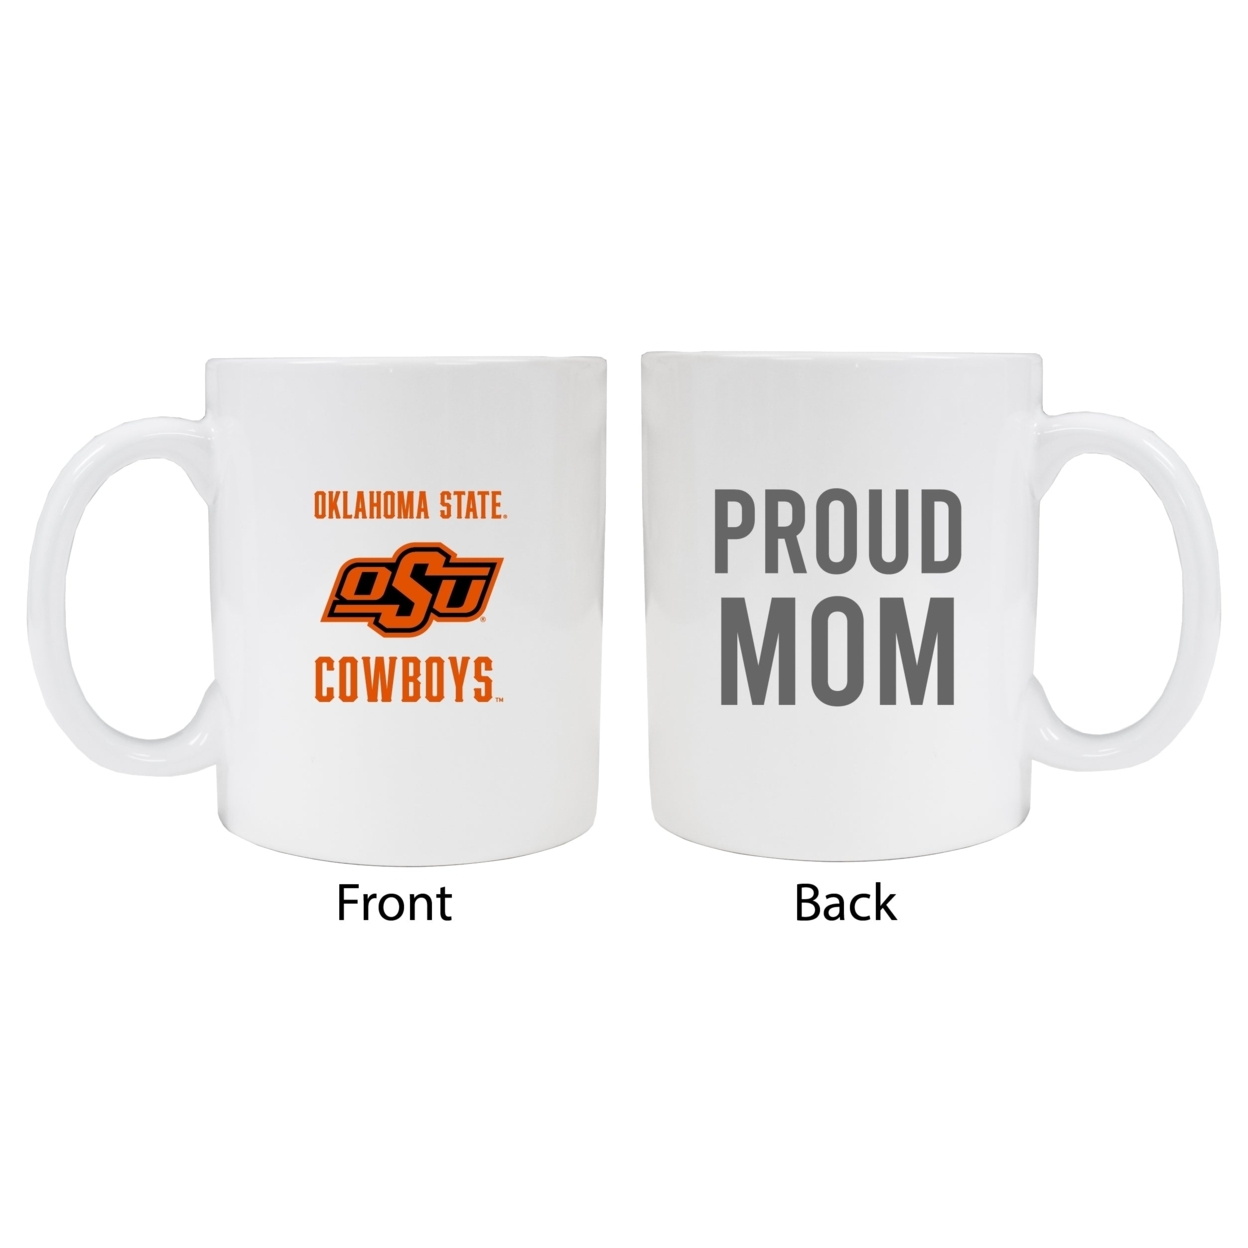 Oklahoma State Cowboys Proud Mom Ceramic Coffee Mug - White